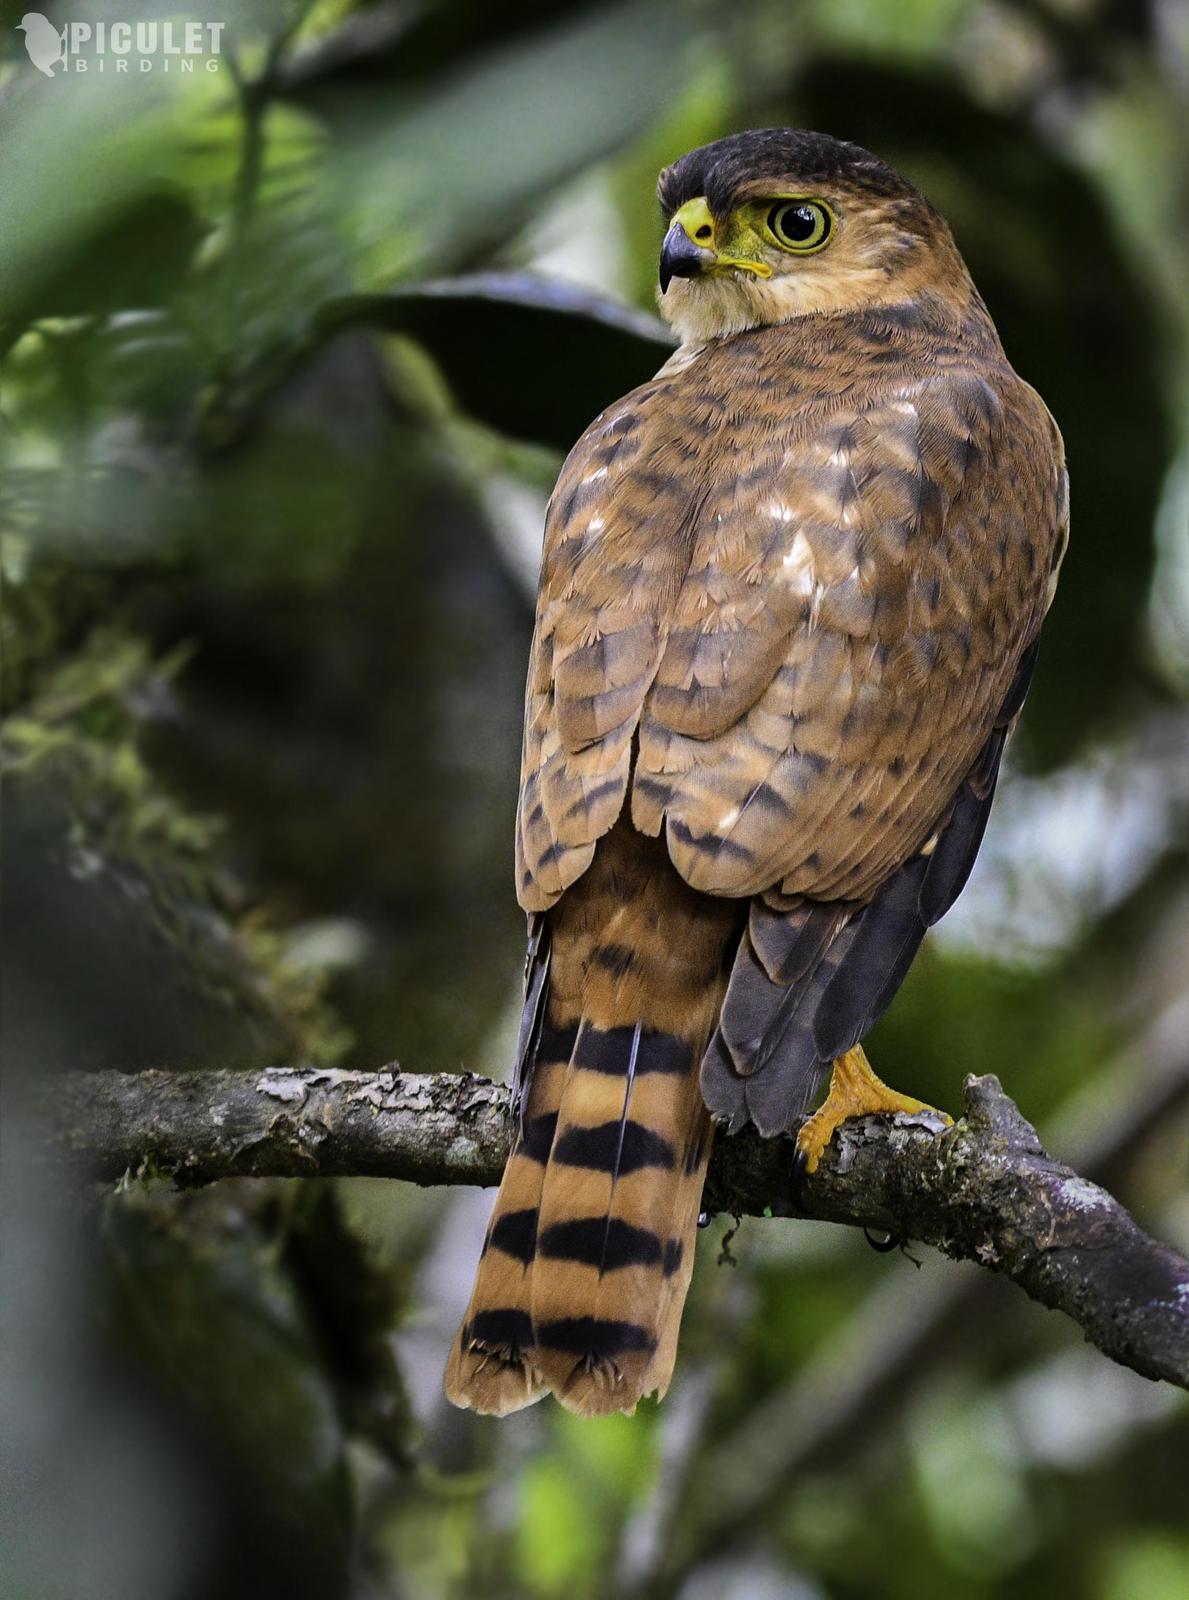 Semicollared Hawk Photo by Julio Delgado